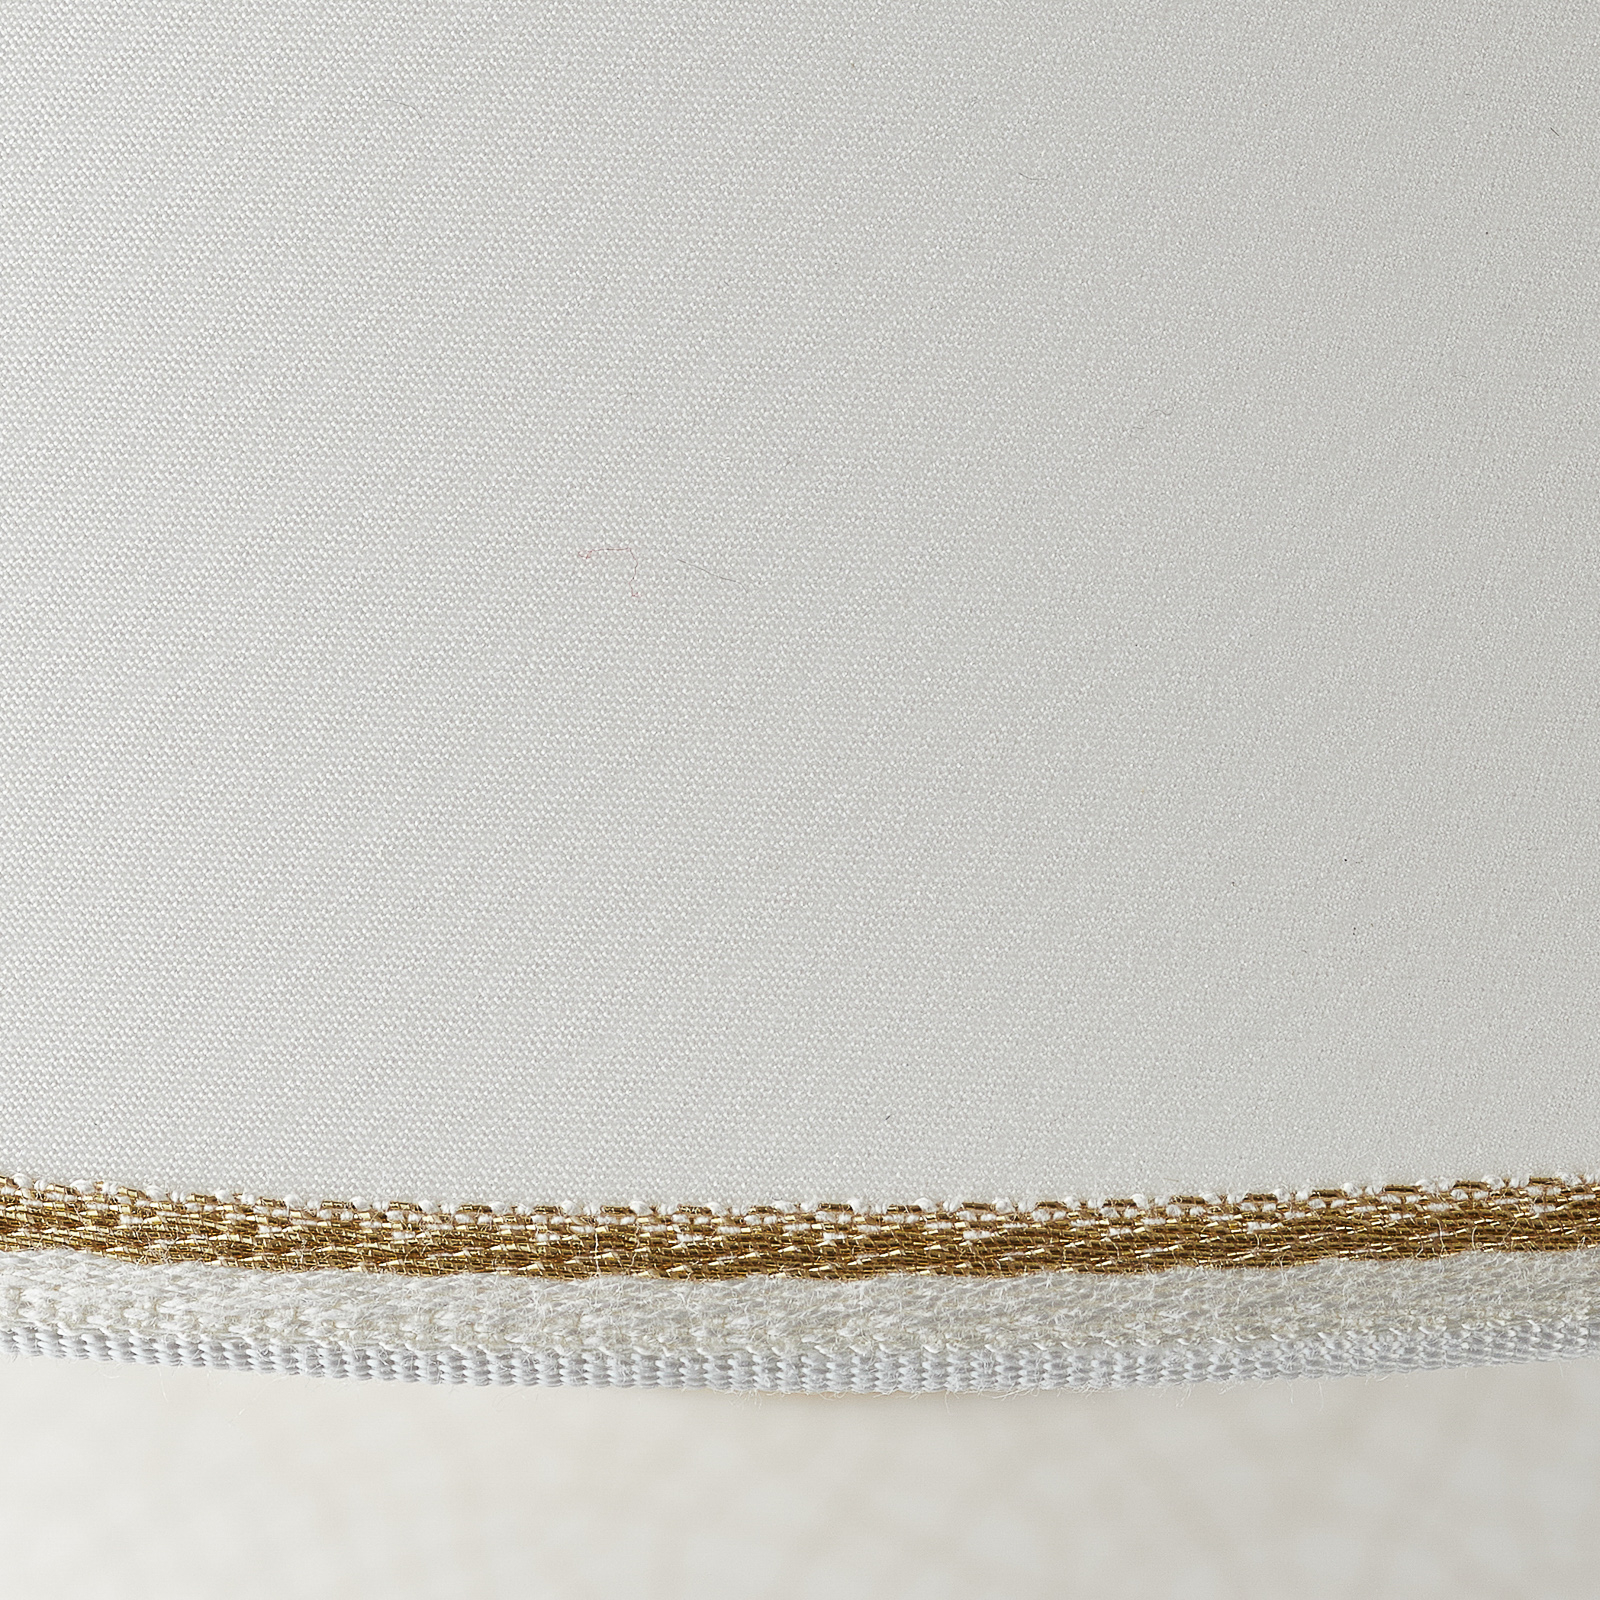 Tischleuchte Giardino Craclee in Weiß, Ø 40 cm